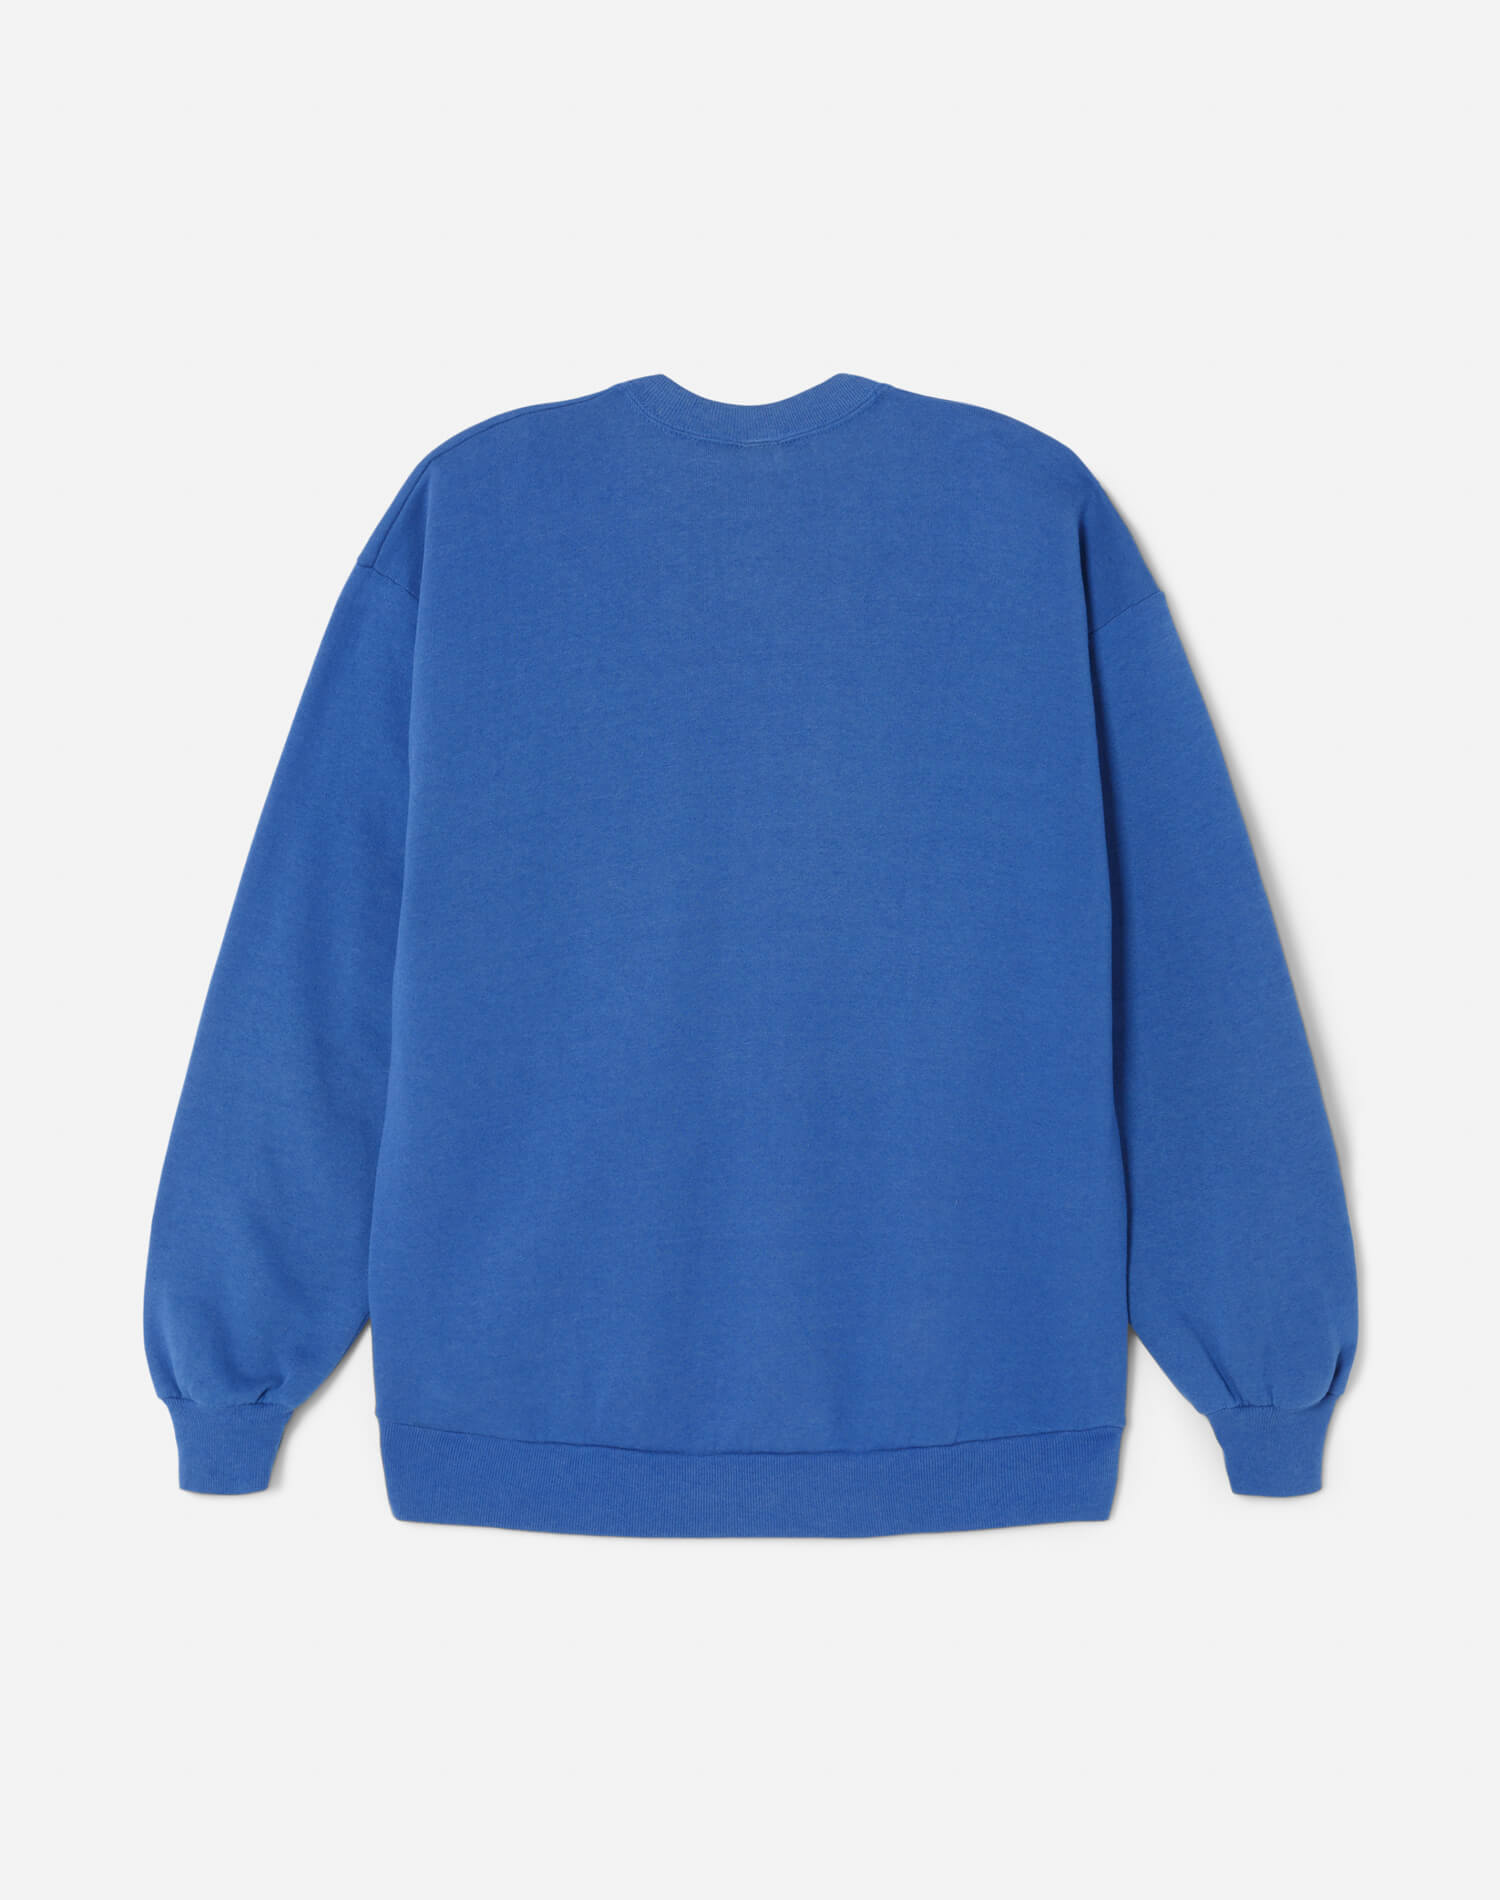 Upcycled "LAX" Sweatshirt - Blue